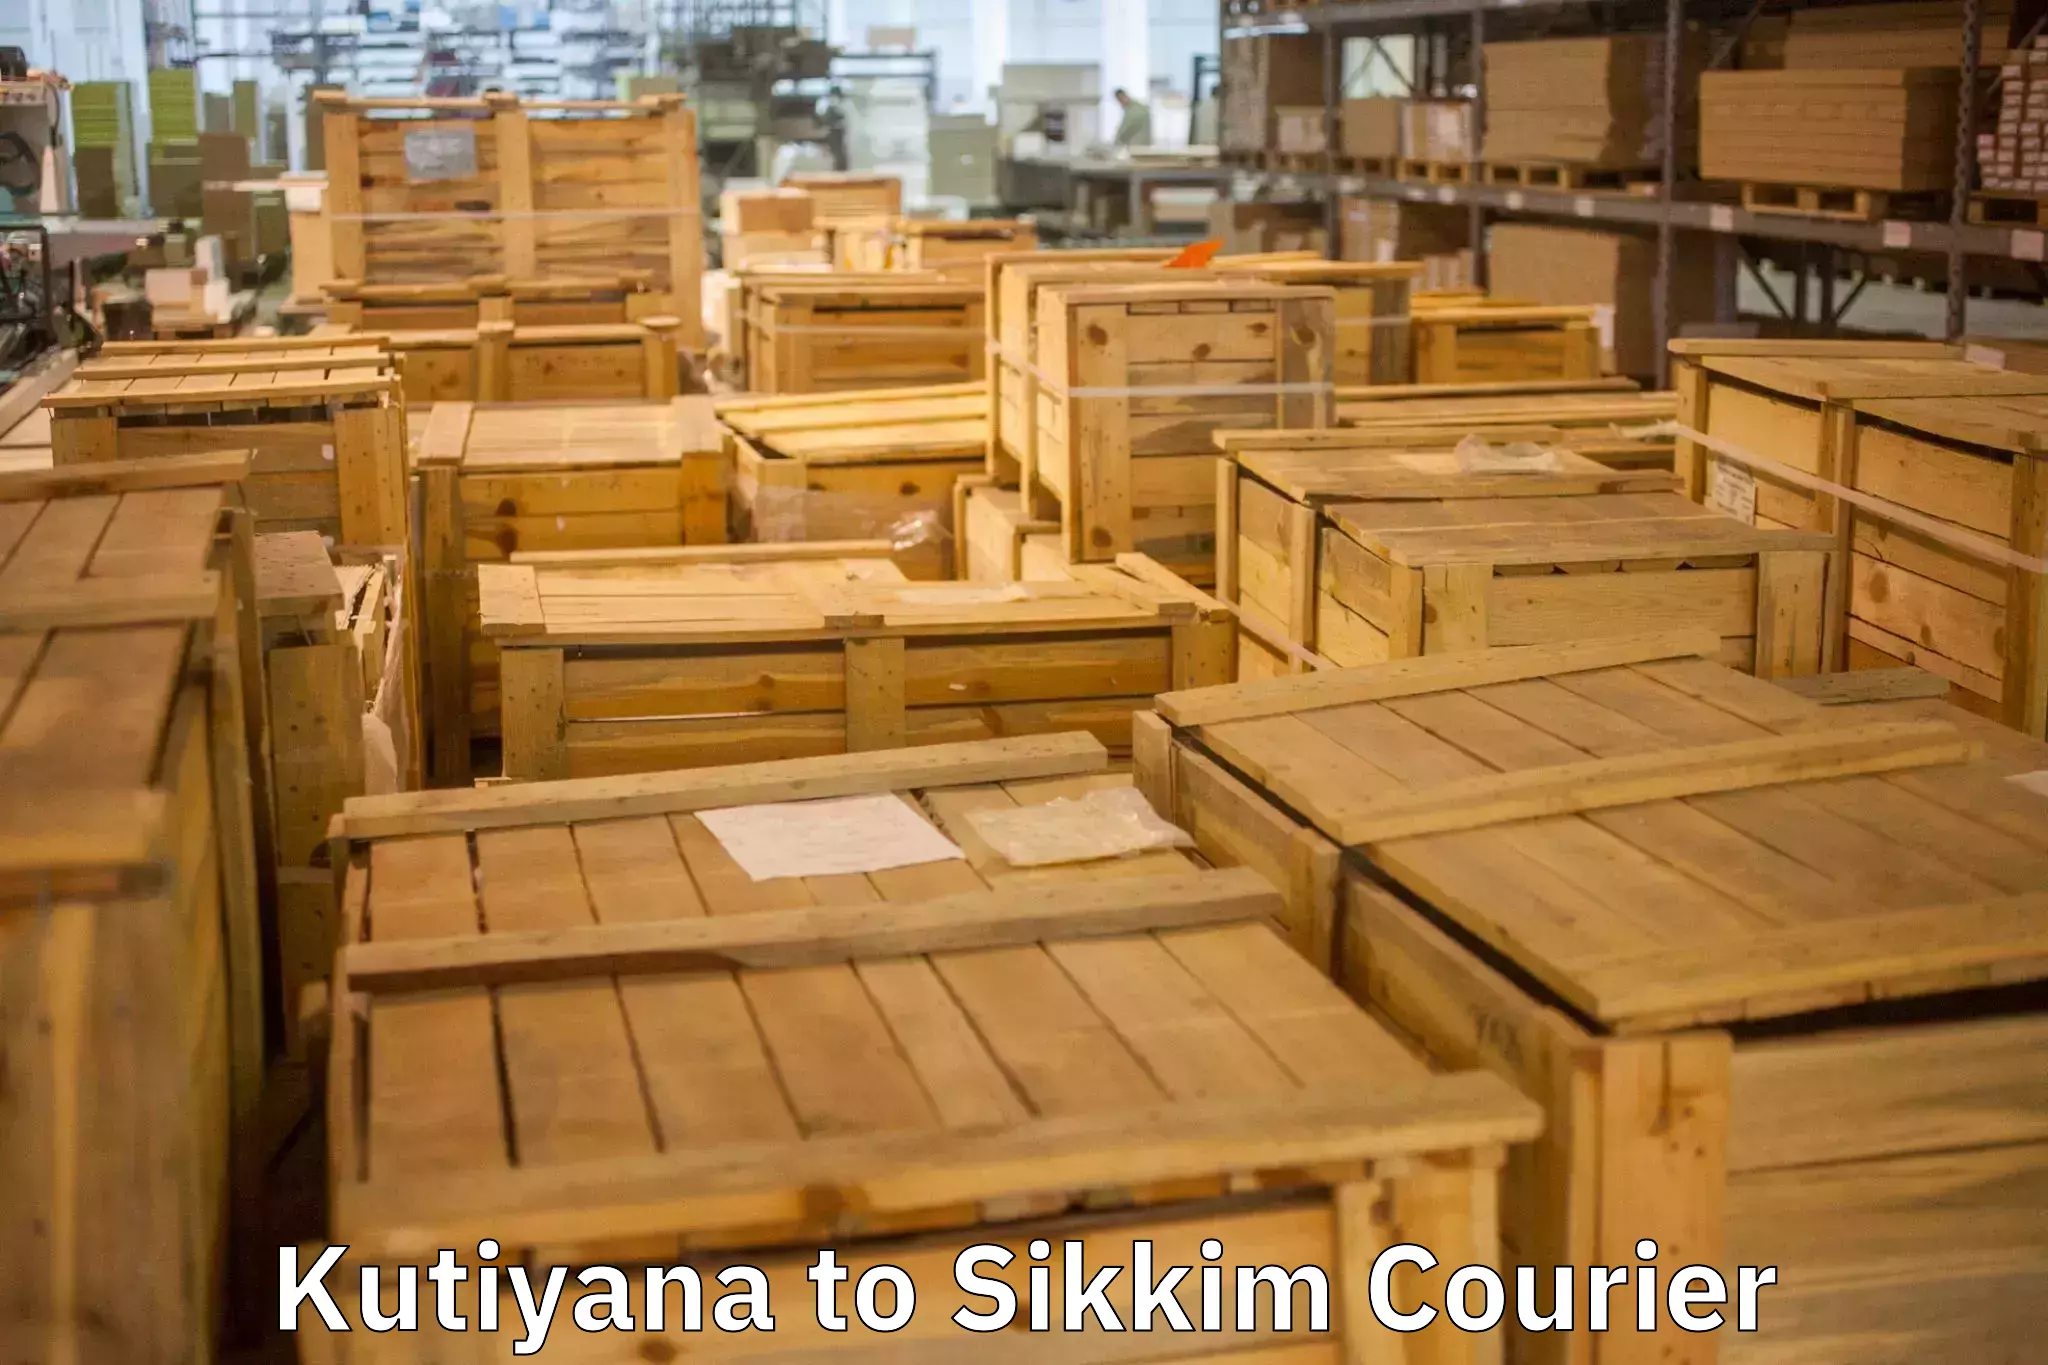 Expert goods movers Kutiyana to Geyzing